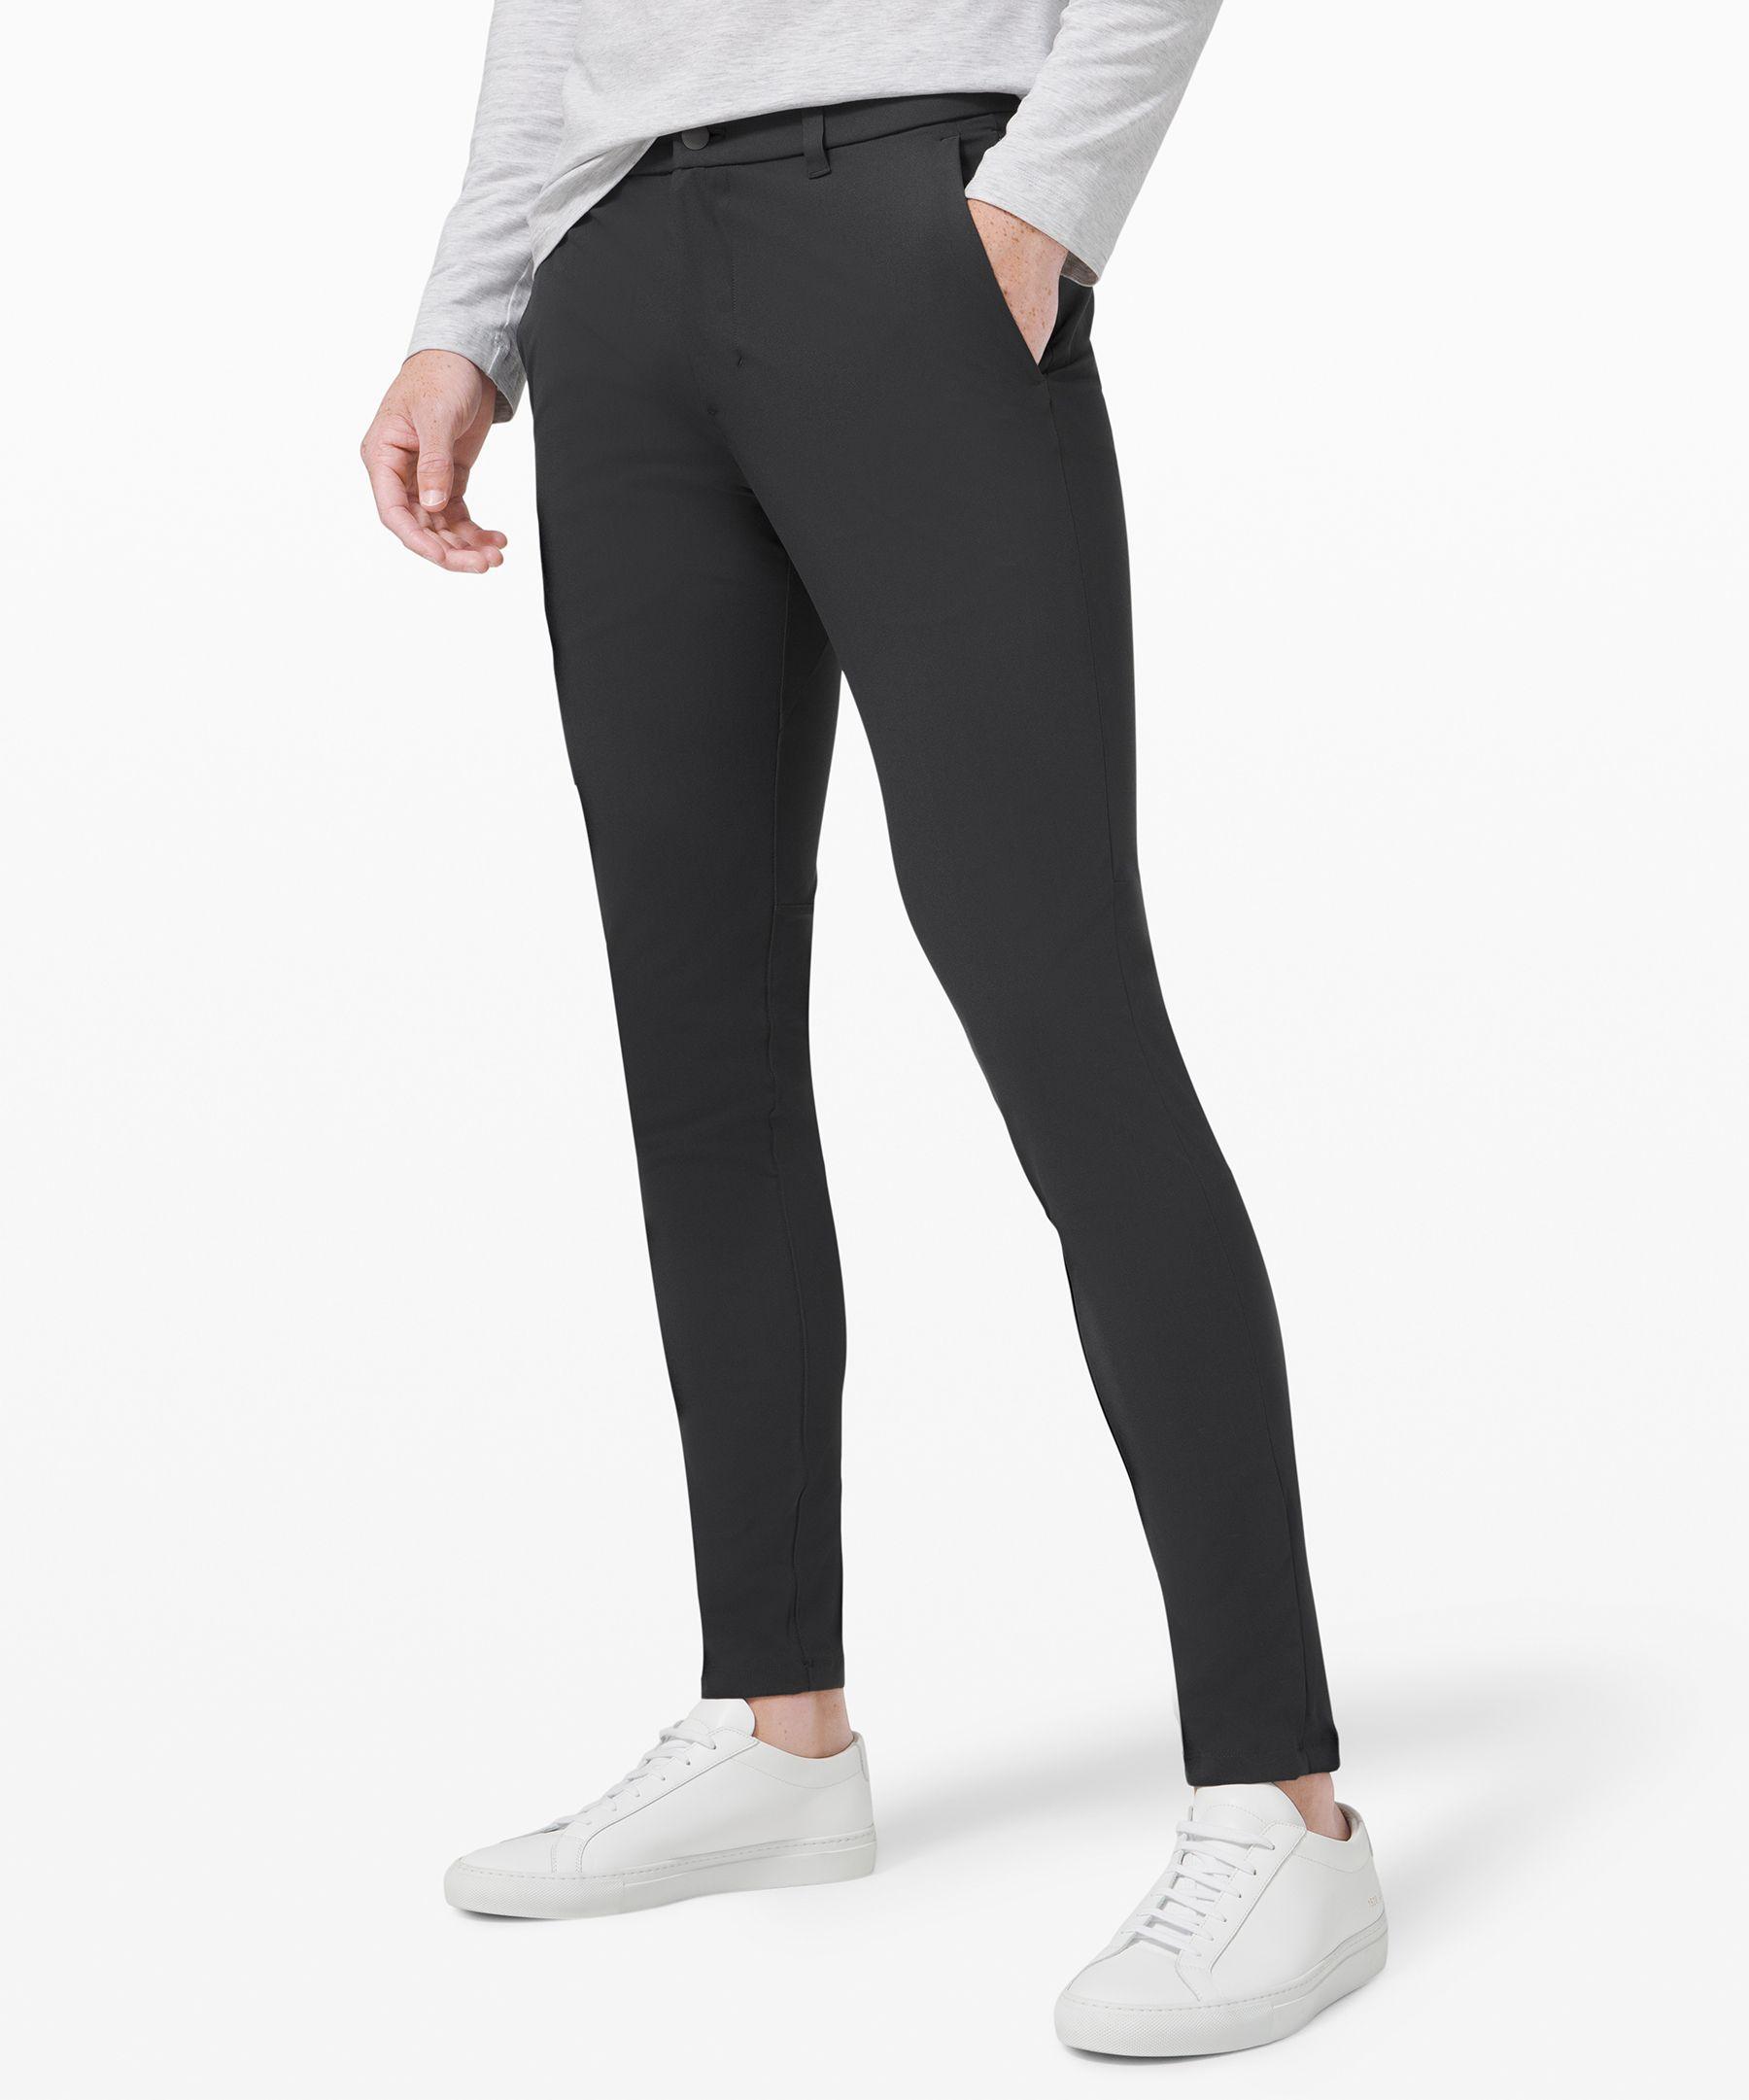 Lululemon athletica Commission Slim-Fit Pant 32 *Warpstreme, Men's  Trousers